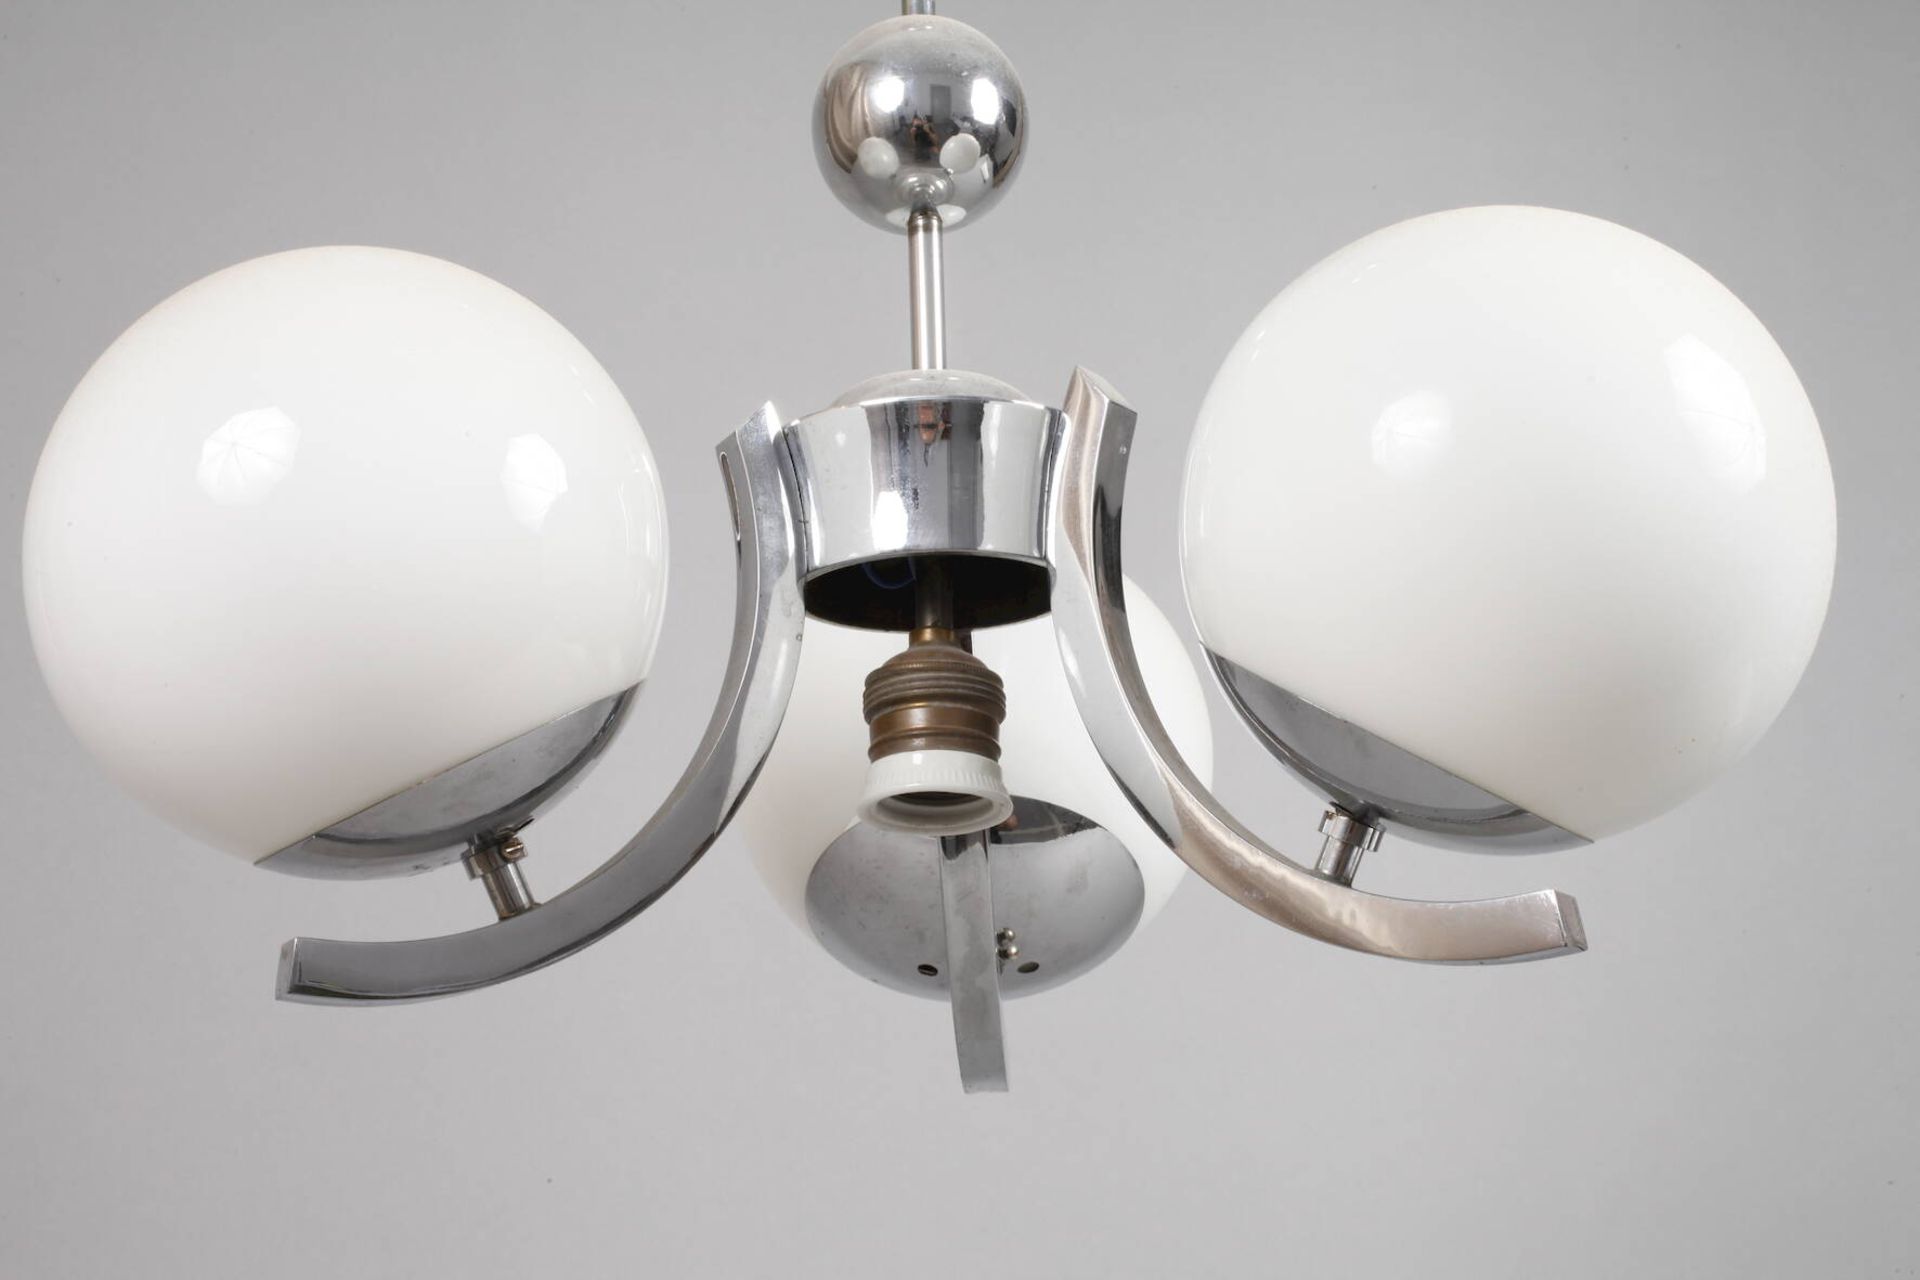 Drei Deckenlampen Art déco1920er Jahre, verchromte Metallgestänge mit jeweils drei kurzen, c- - Bild 4 aus 8